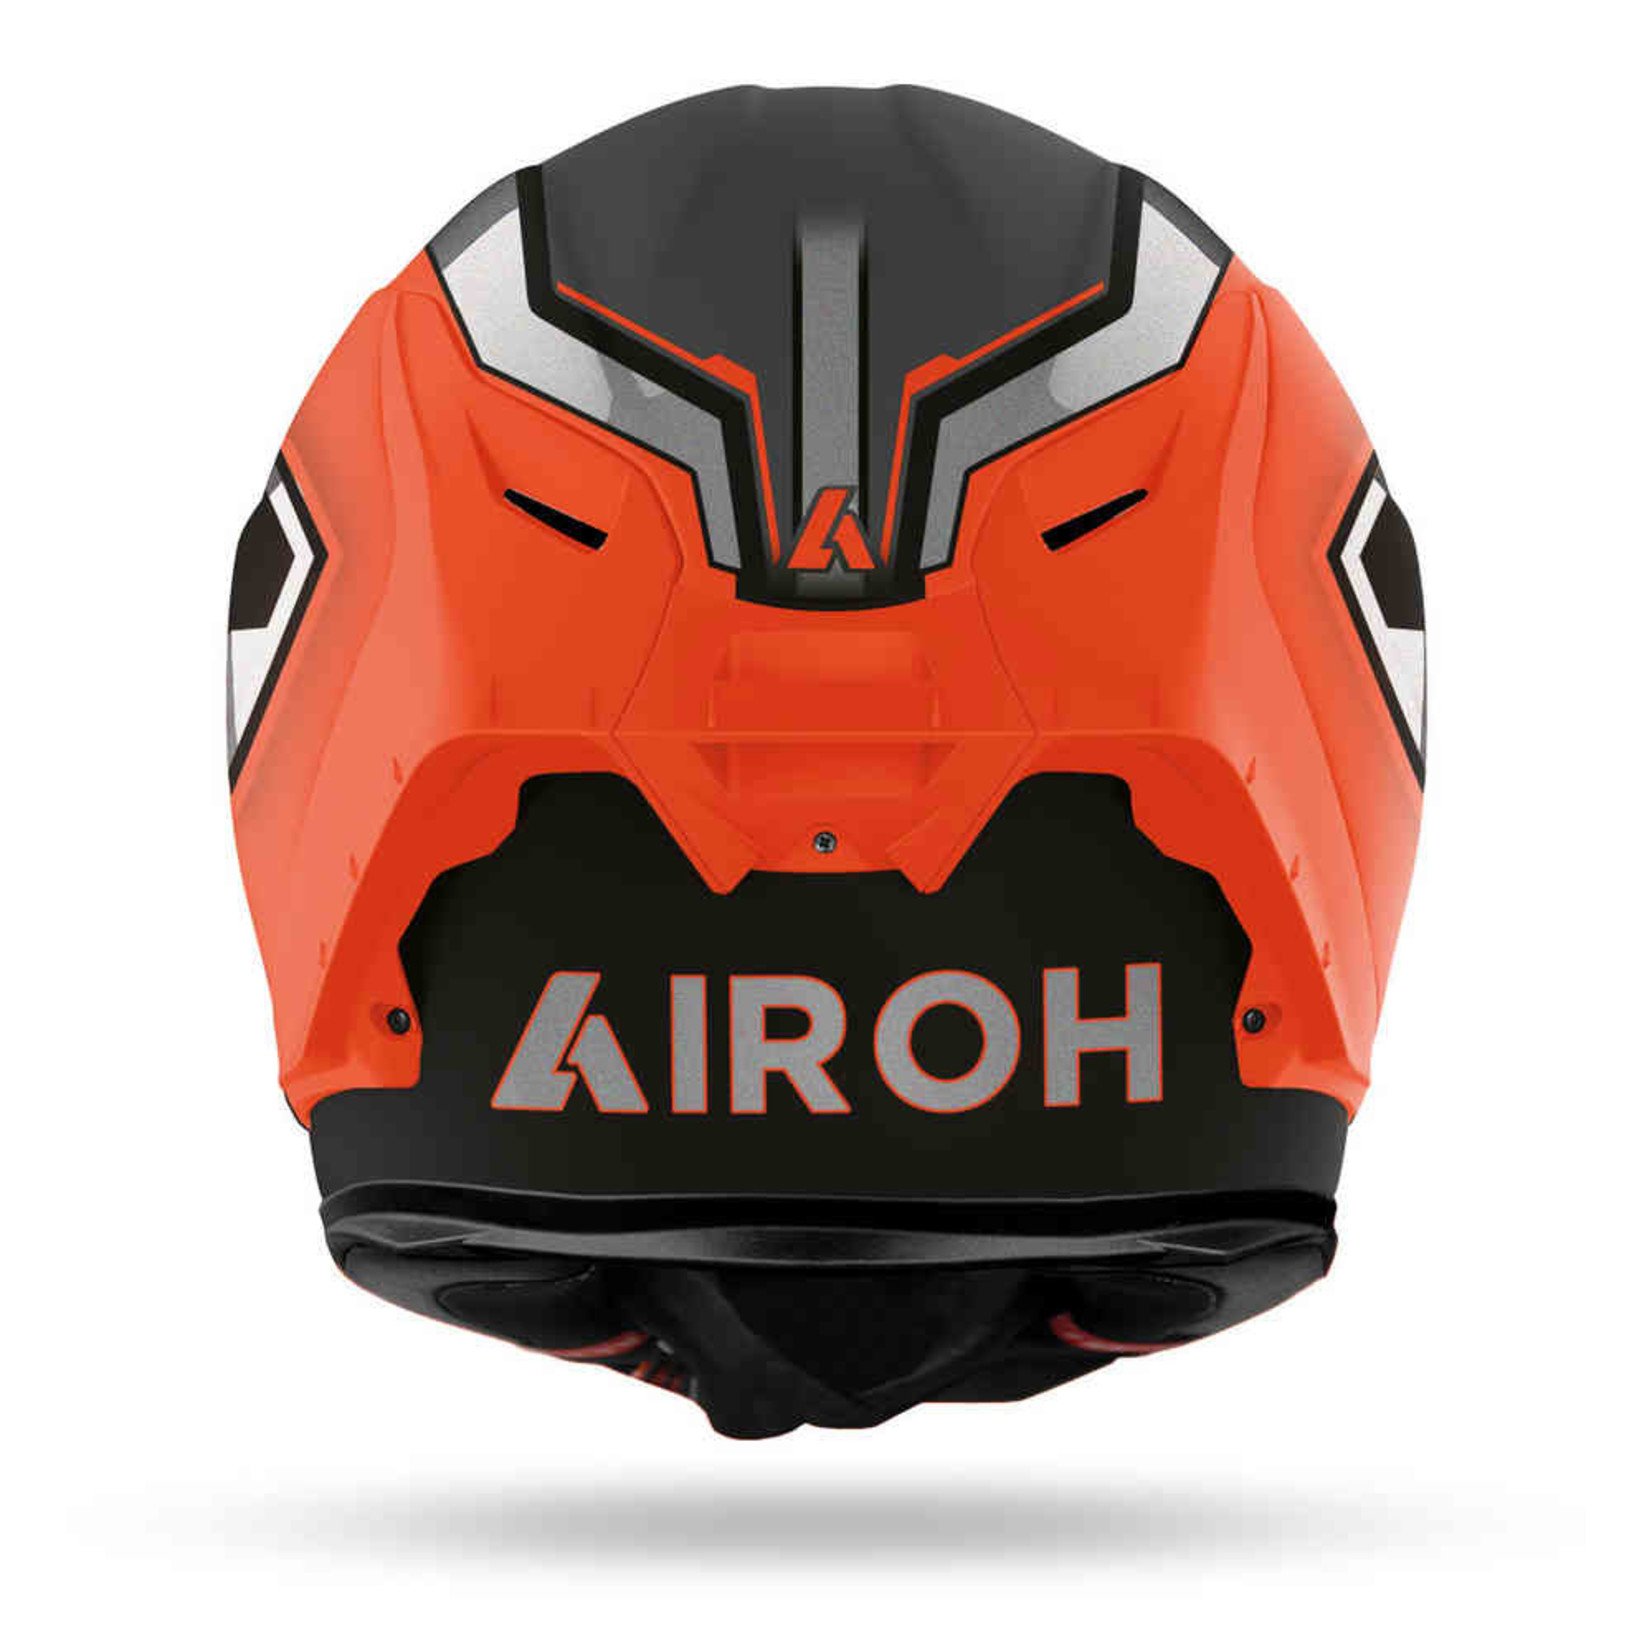 Airoh Airoh GP 550 S Rush orange fluo matt